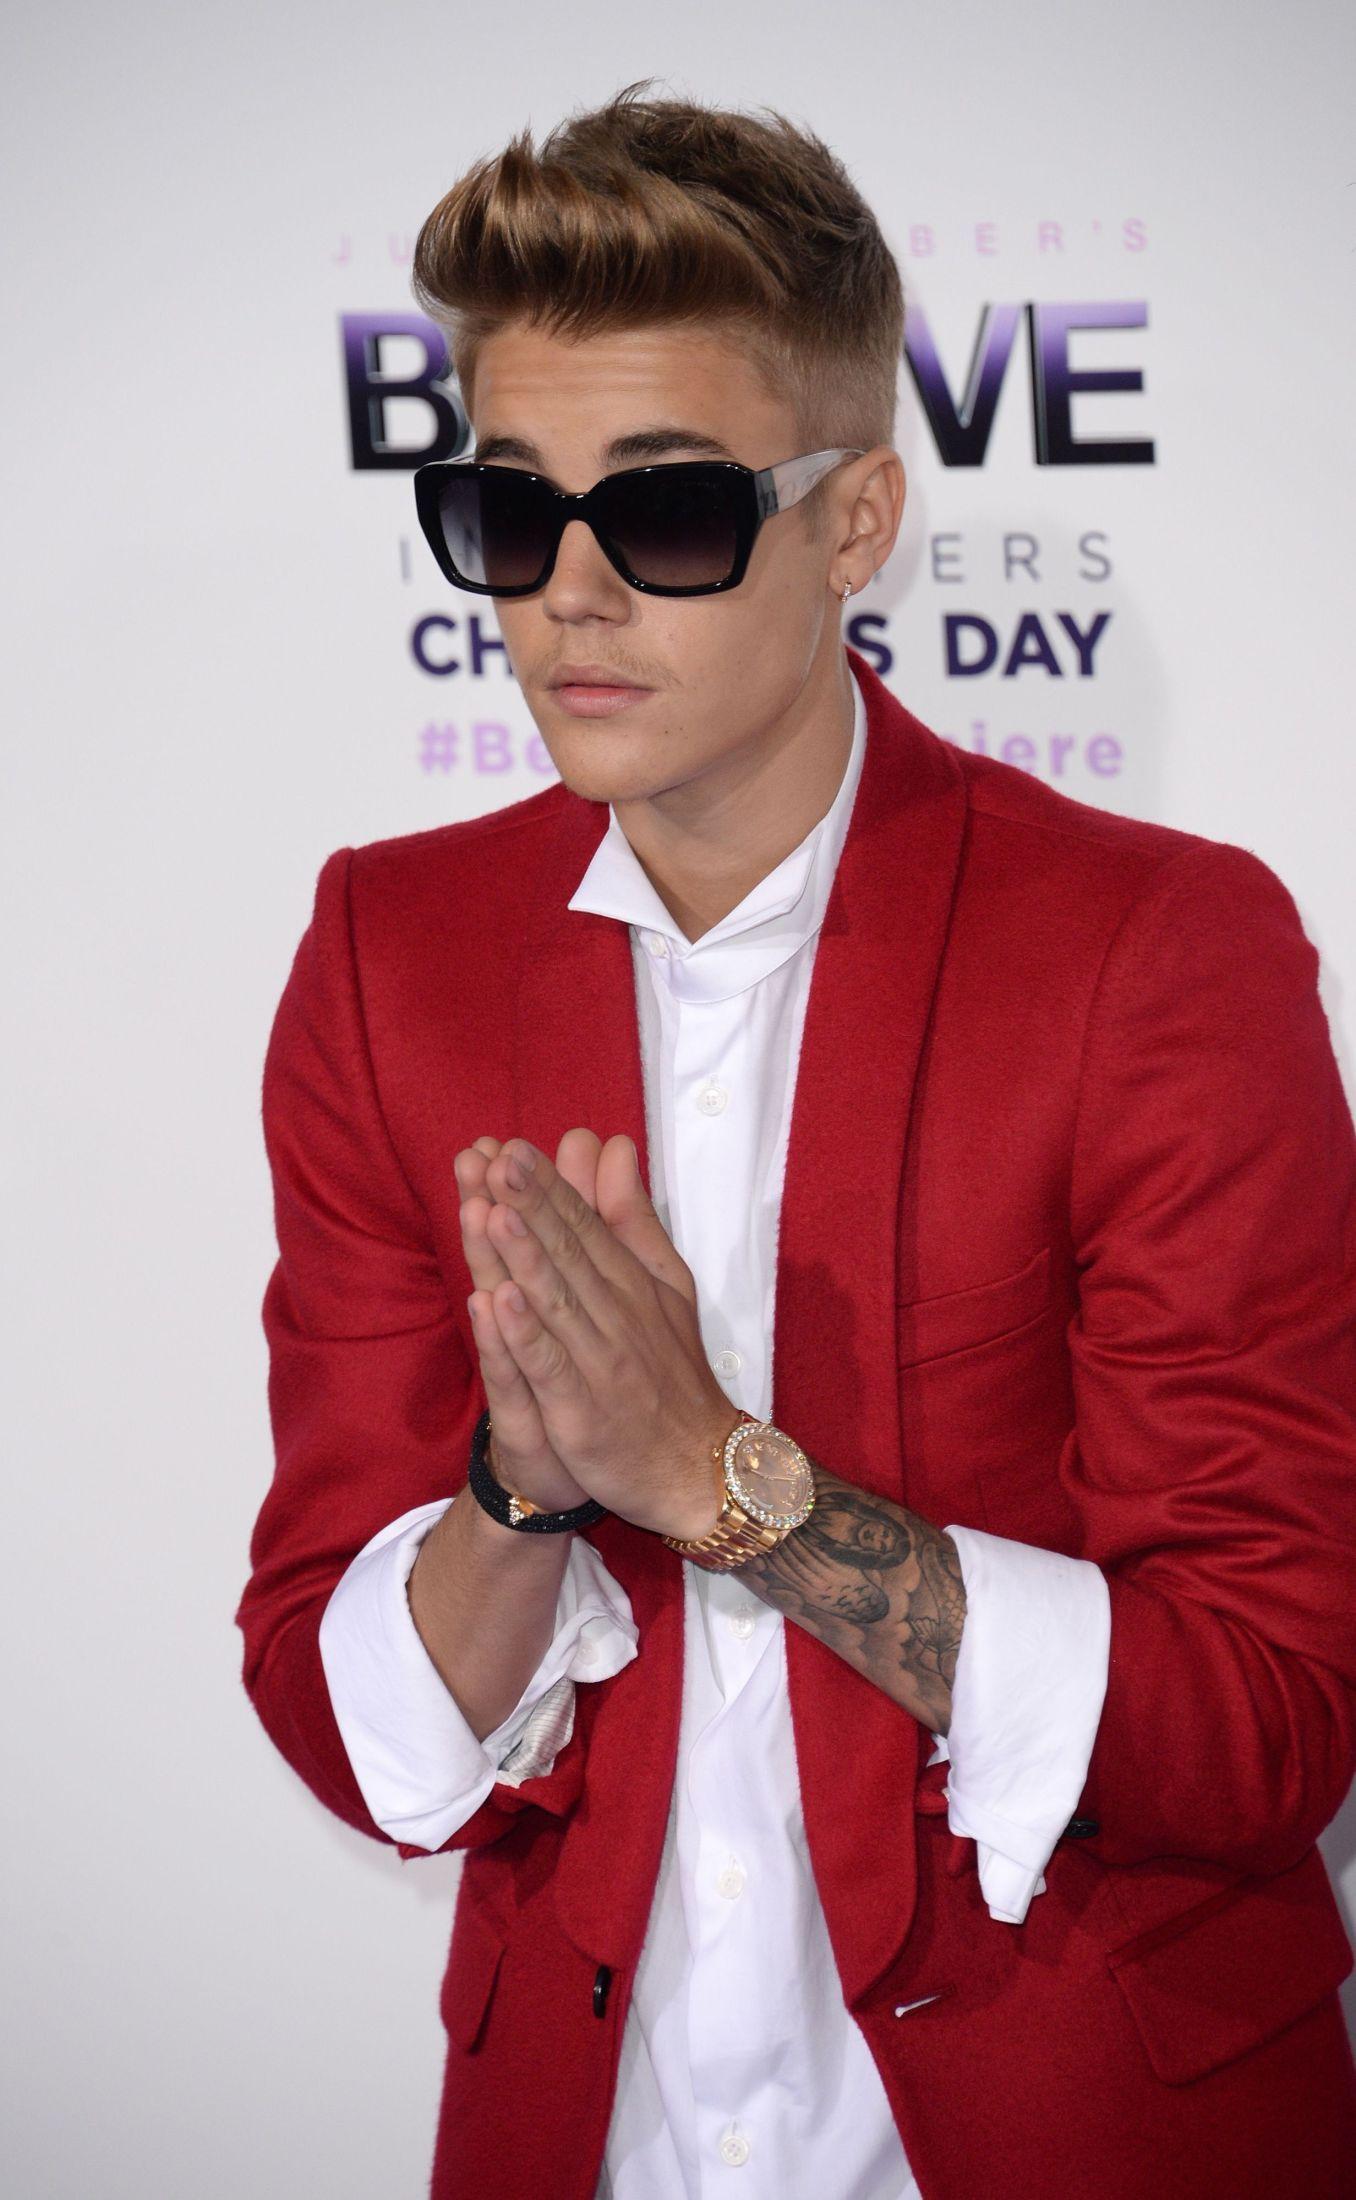 POSERER: Justin Bieber poserer for kameraene i en rød dress fra Balmain.